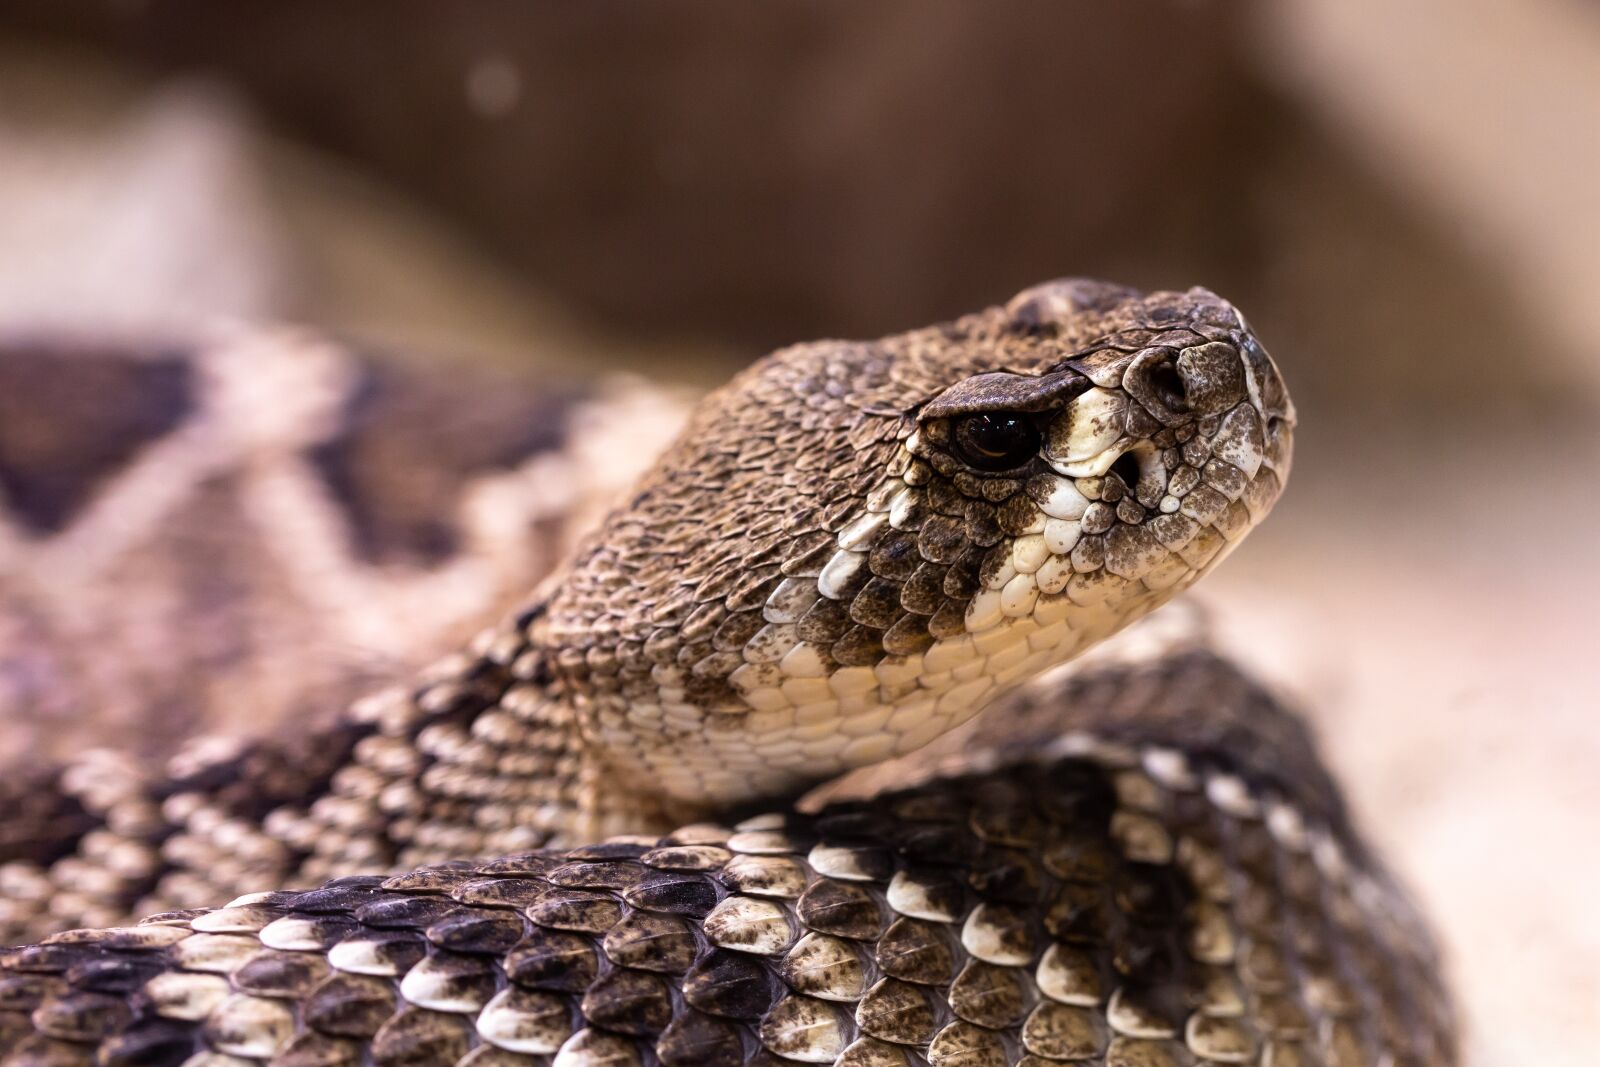 Canon EOS RP sample photo. Rattlesnake, snake, venomous snake photography